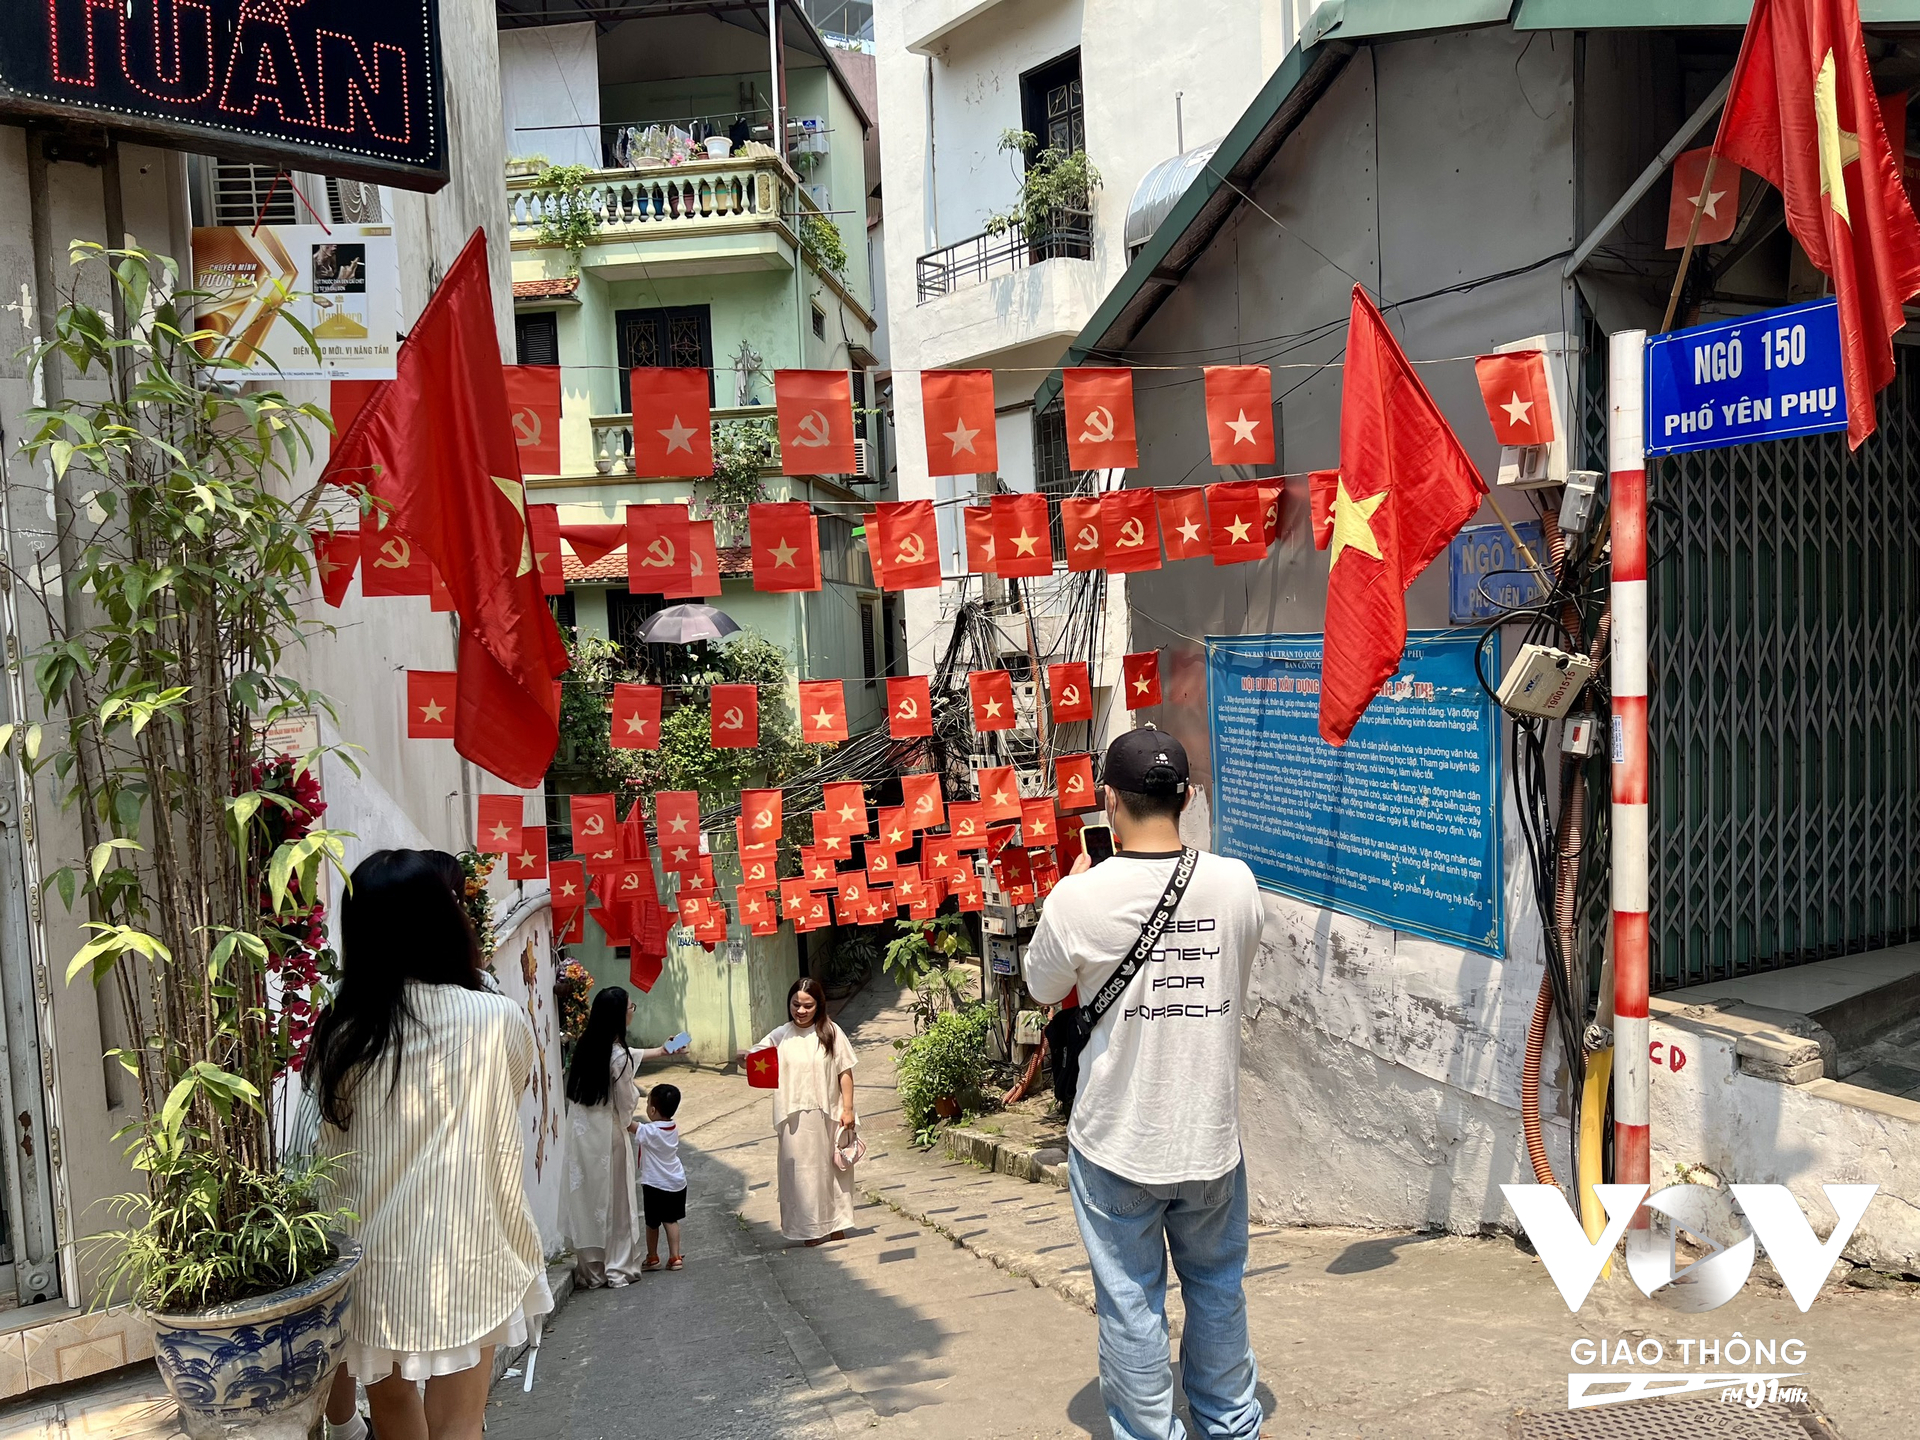 Các bạn trẻ ấn tượng bởi cách trang trí ở ngõ 150 Yên Phụ - Tây Hồ nên xếp hàng chờ chụp ảnh vì cũng muốn hòa mình vào dịp lễ của cả nước.